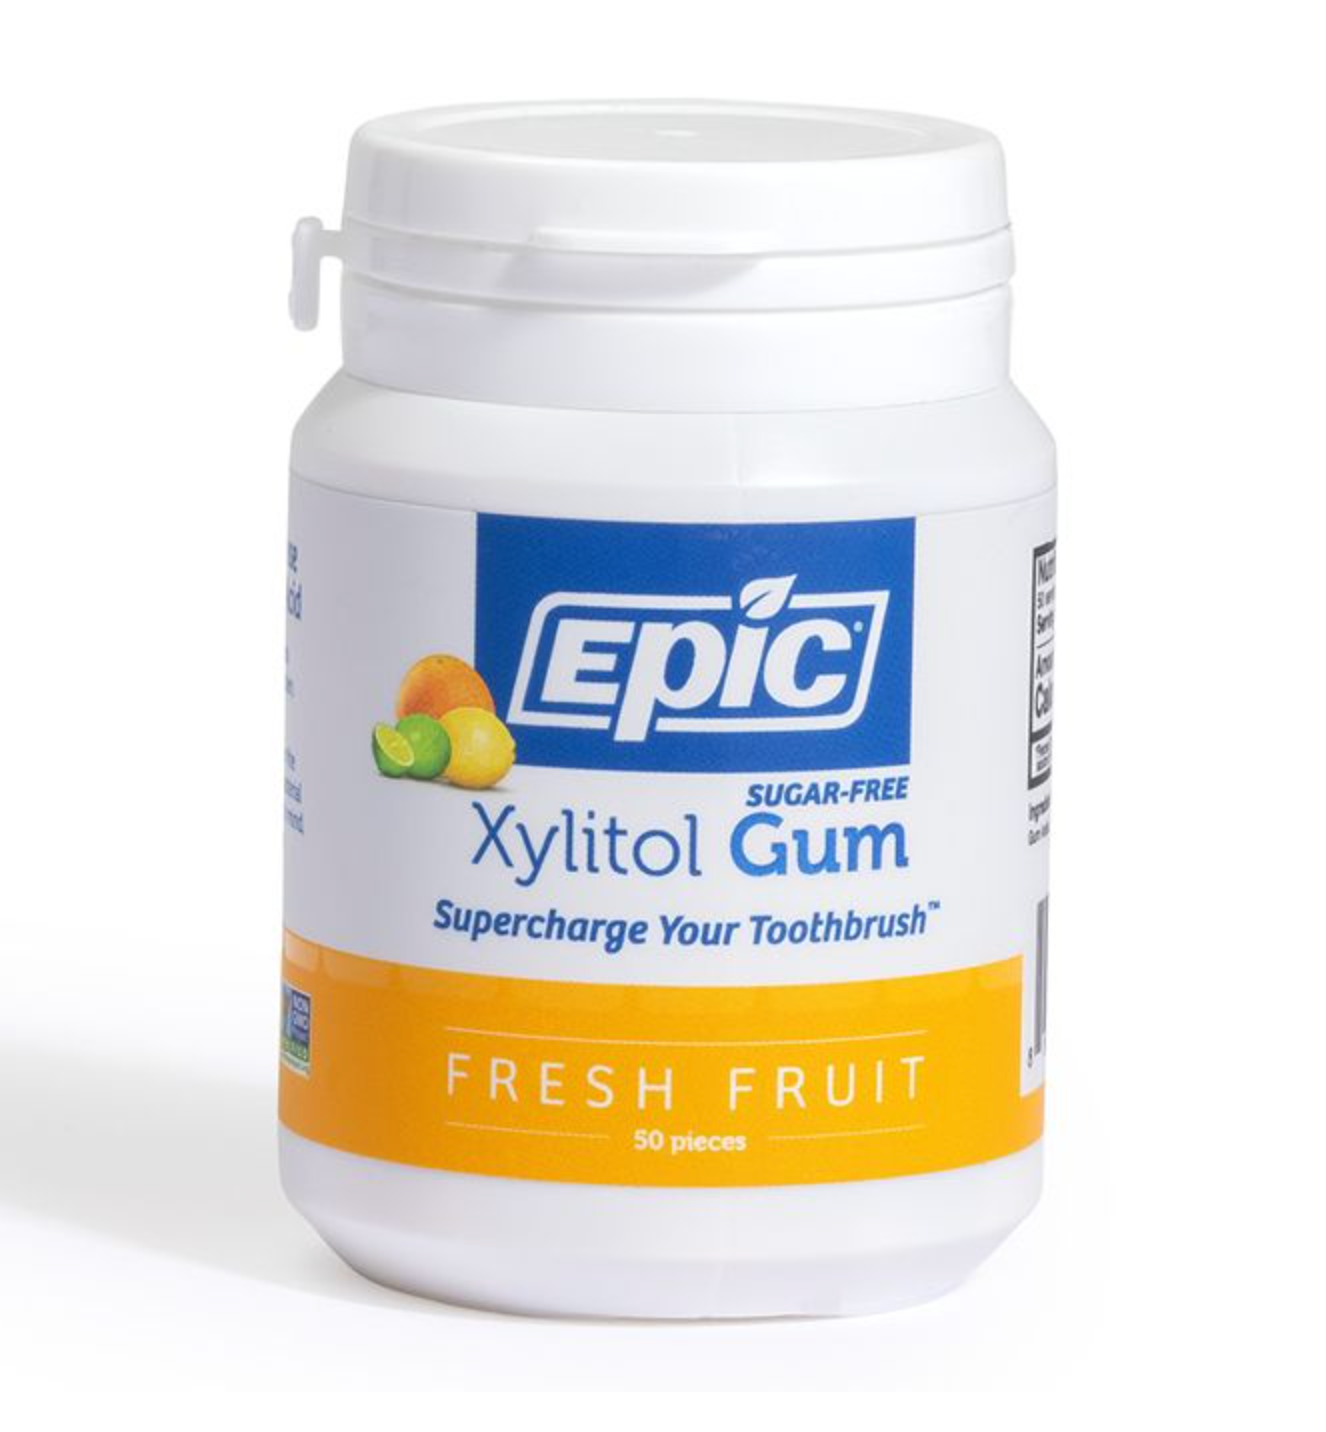 Epic Xylitol Gum Fresh Fruit 50 pieces